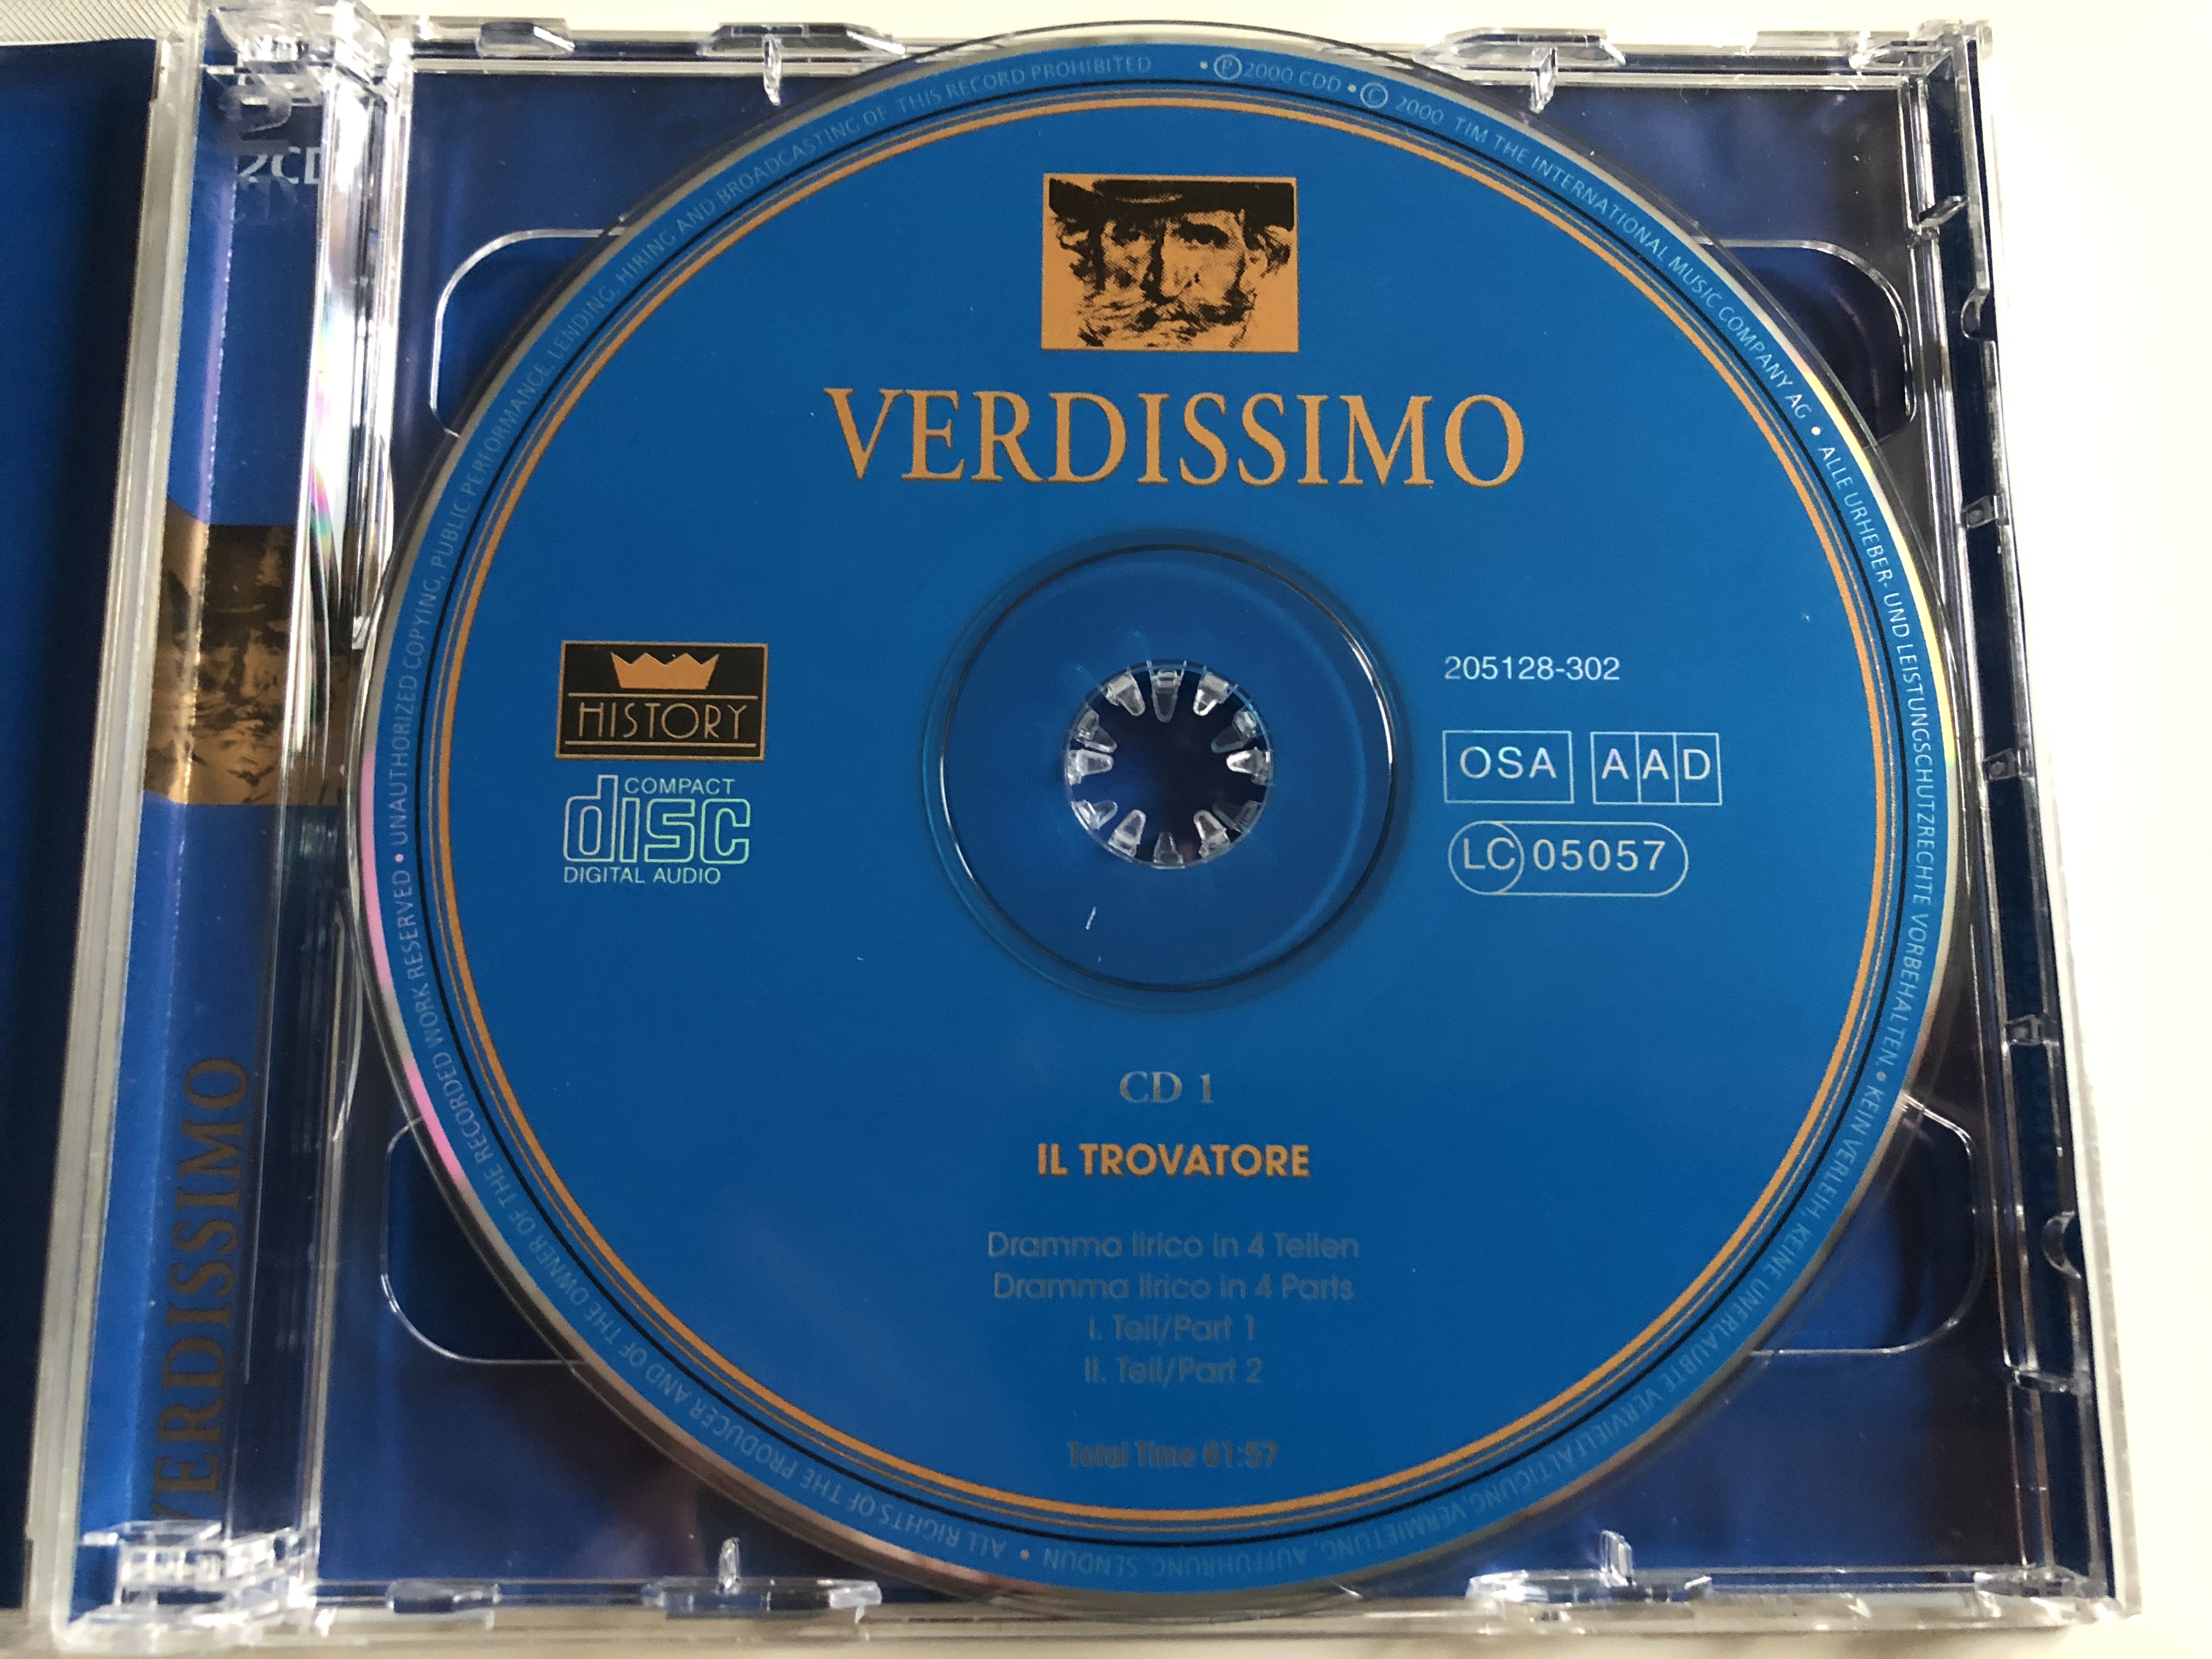 verdissimo-1813-1901-il-trovatore-history-2x-audio-cd-2000-205128-302-3-.jpg